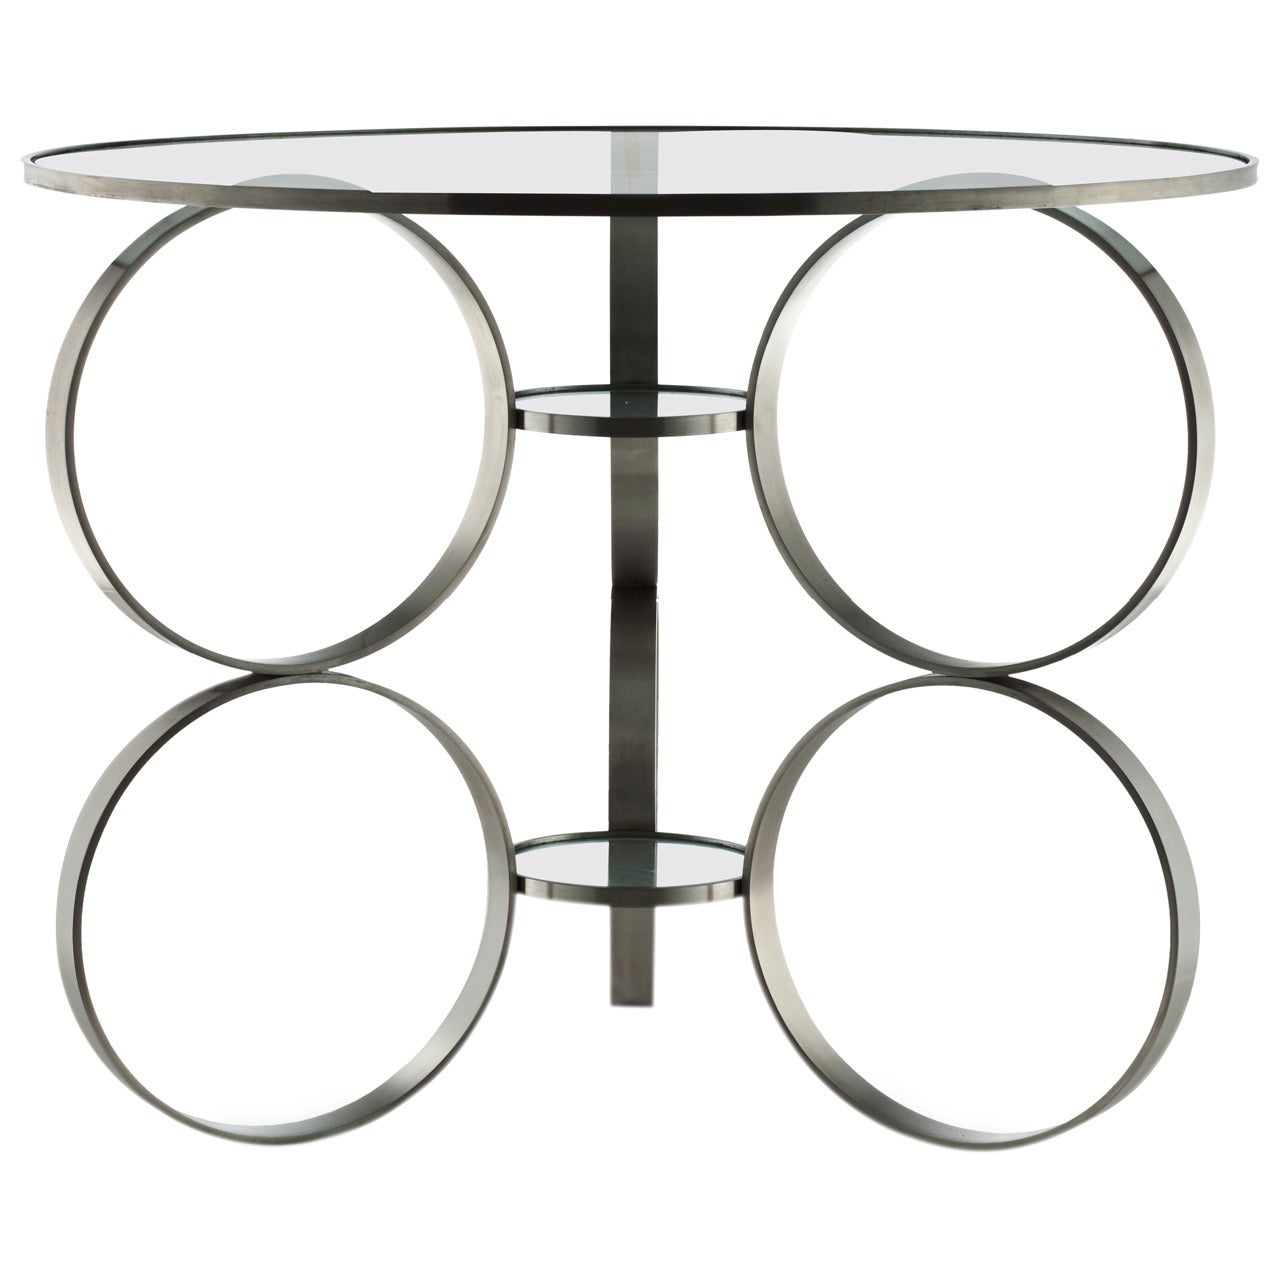 Table « Rings of Steel », conçue par Laurie Beckerman en 2006